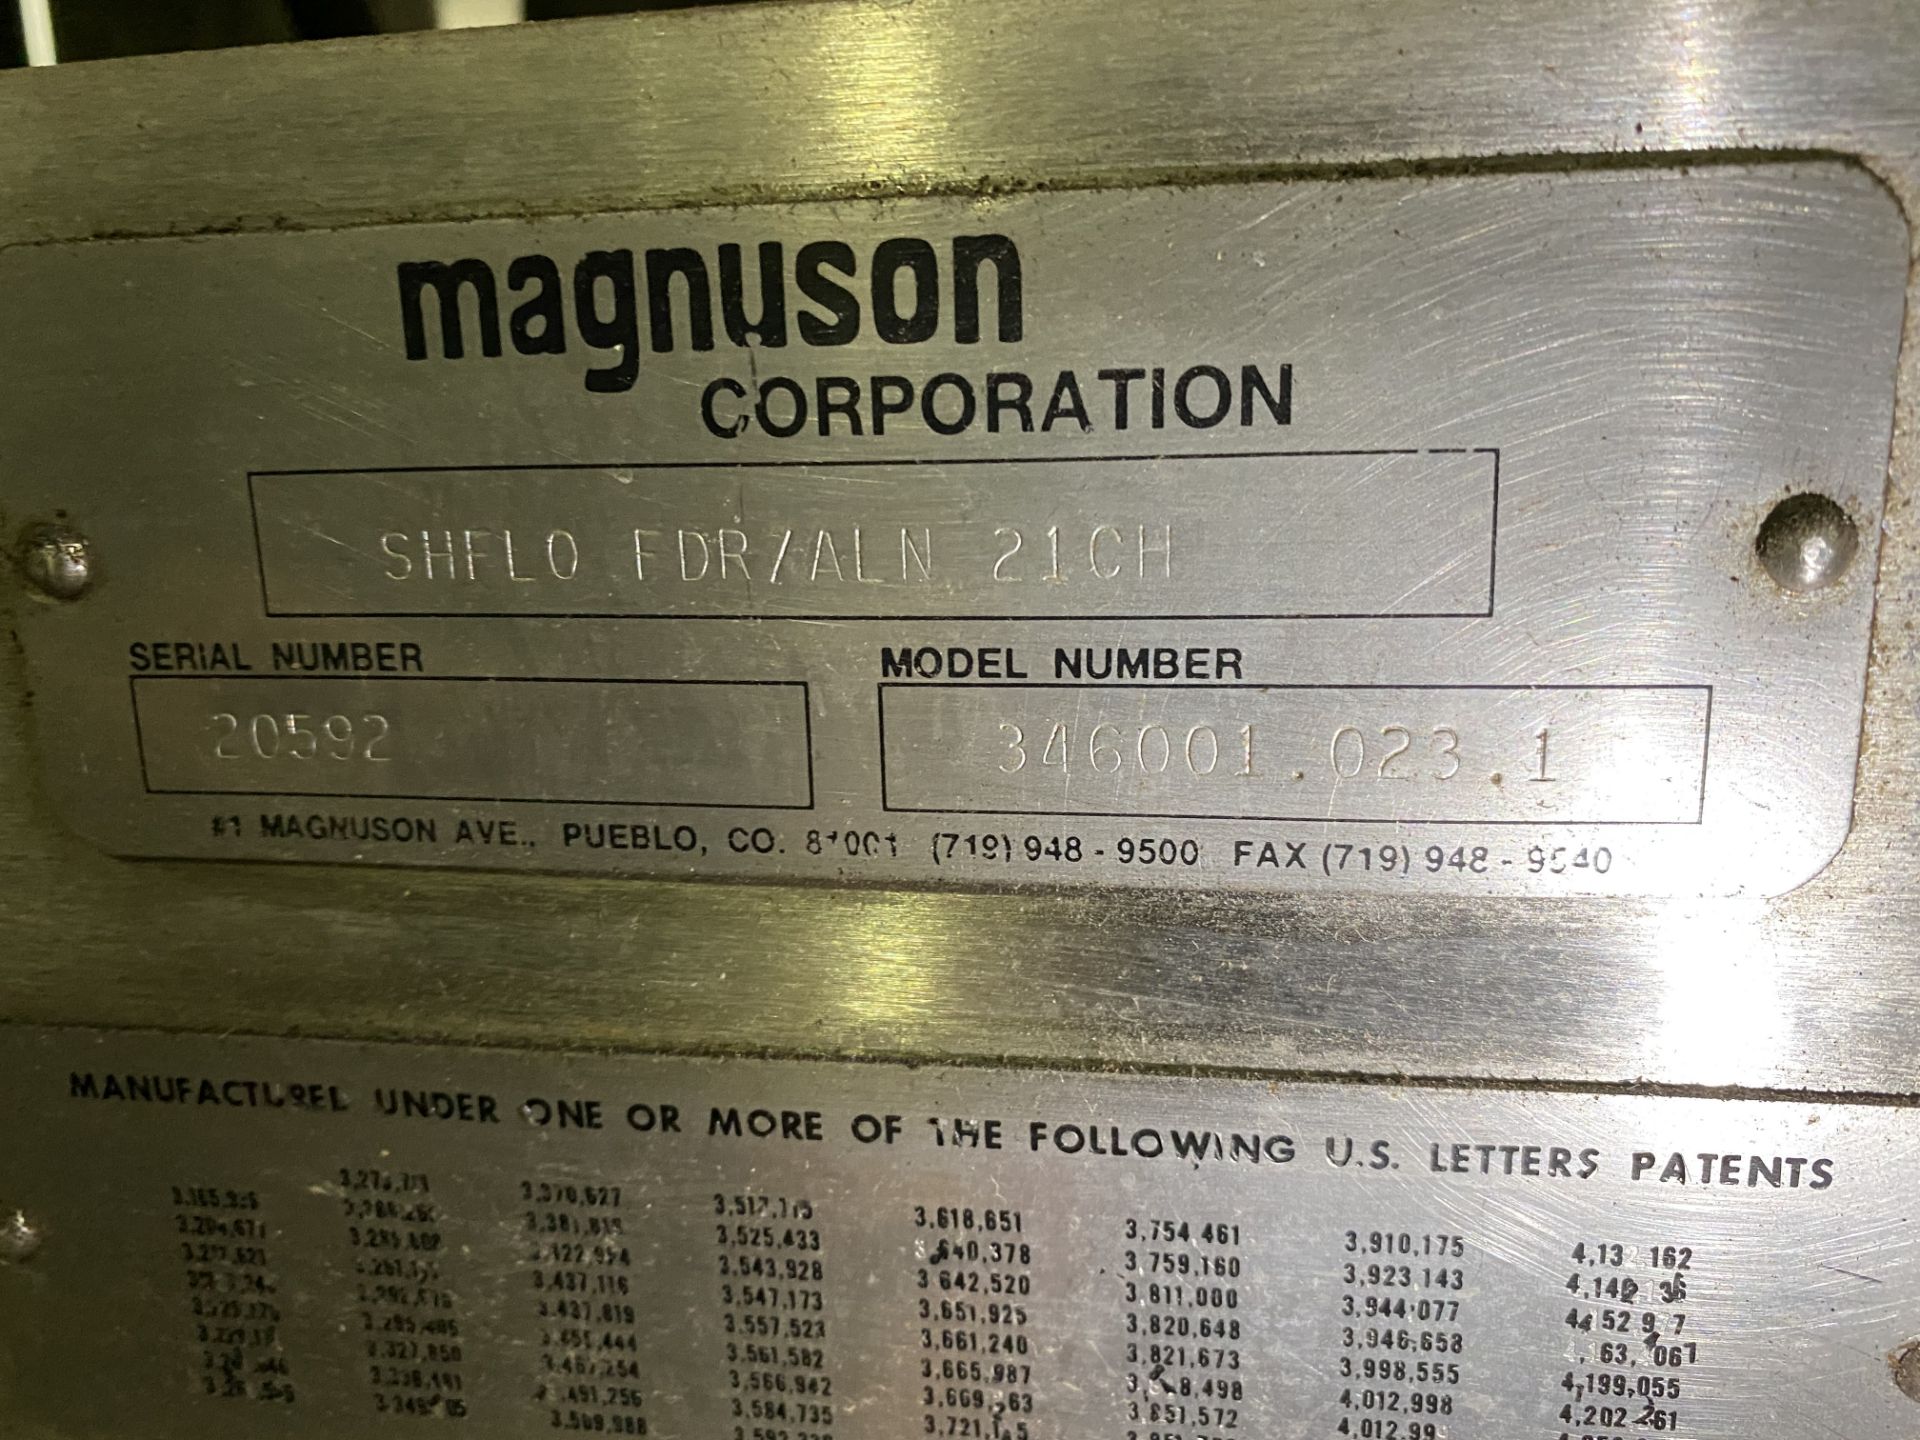 Moline/Magnuson SHFID FDR/AGN21CH, 32" Wide Belt, Model # 346001.023.1, Serial #20592 Rigging/Loadi - Image 4 of 5